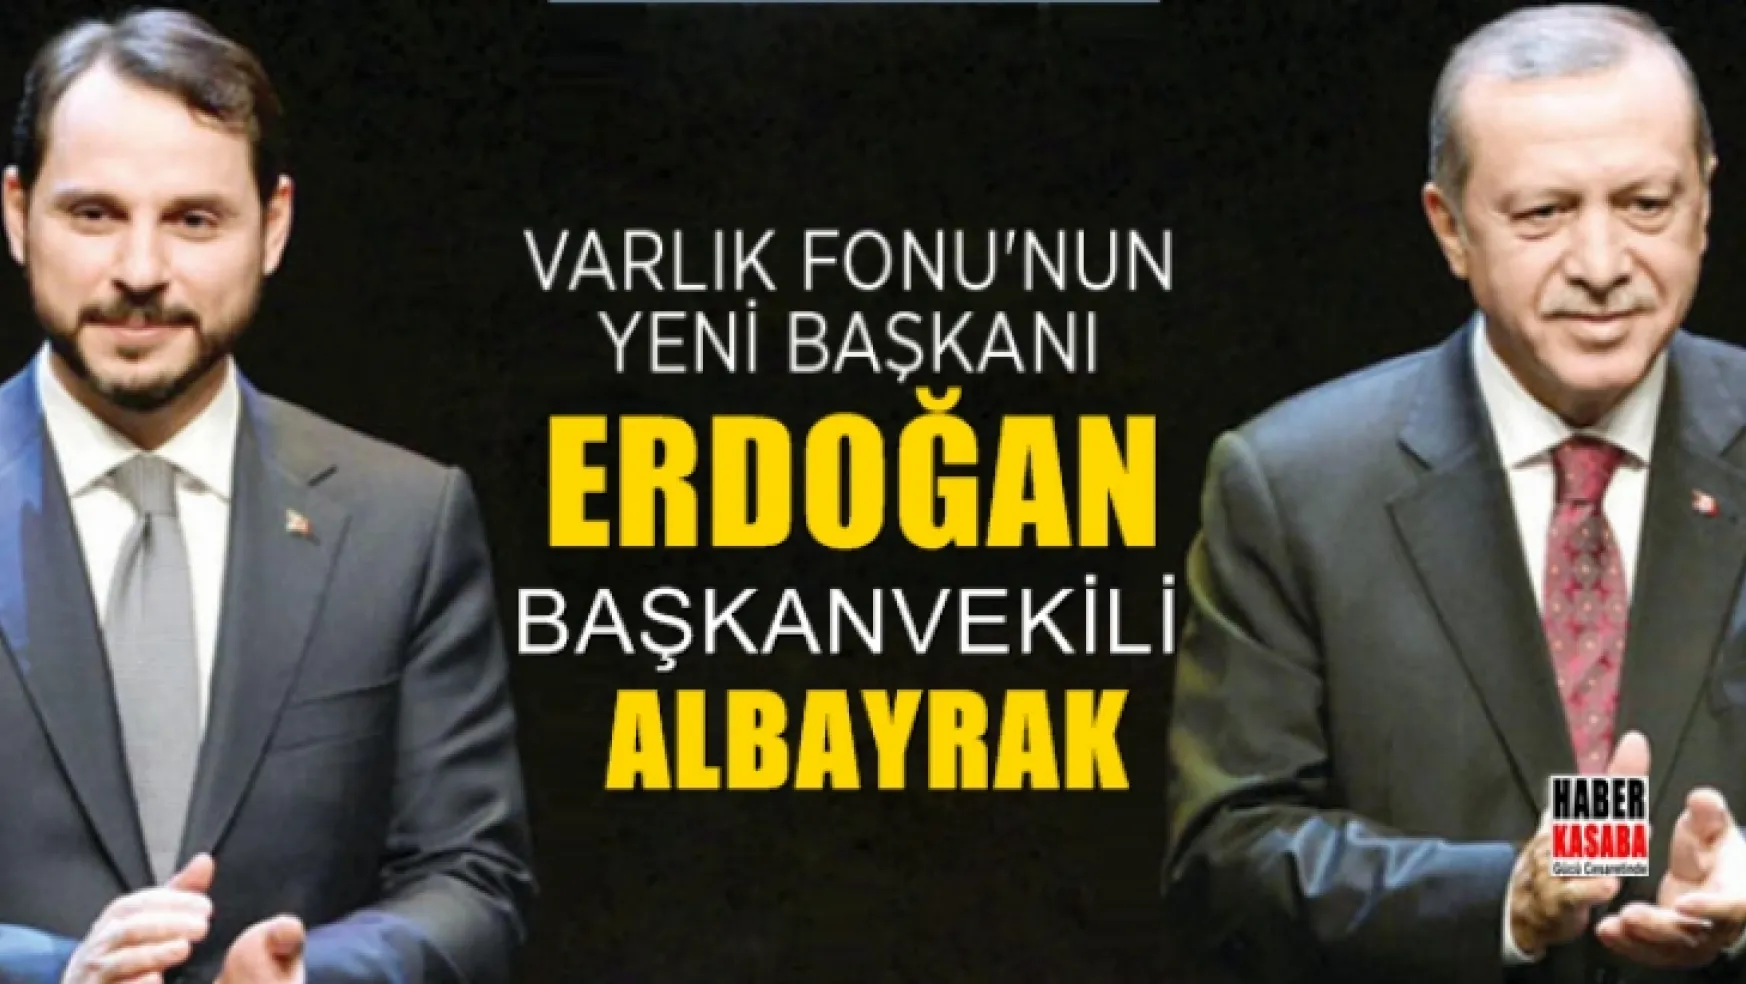 Varlık Fonu'nun yeni başkanı Erdoğan başkanvekili Albayrak oldu